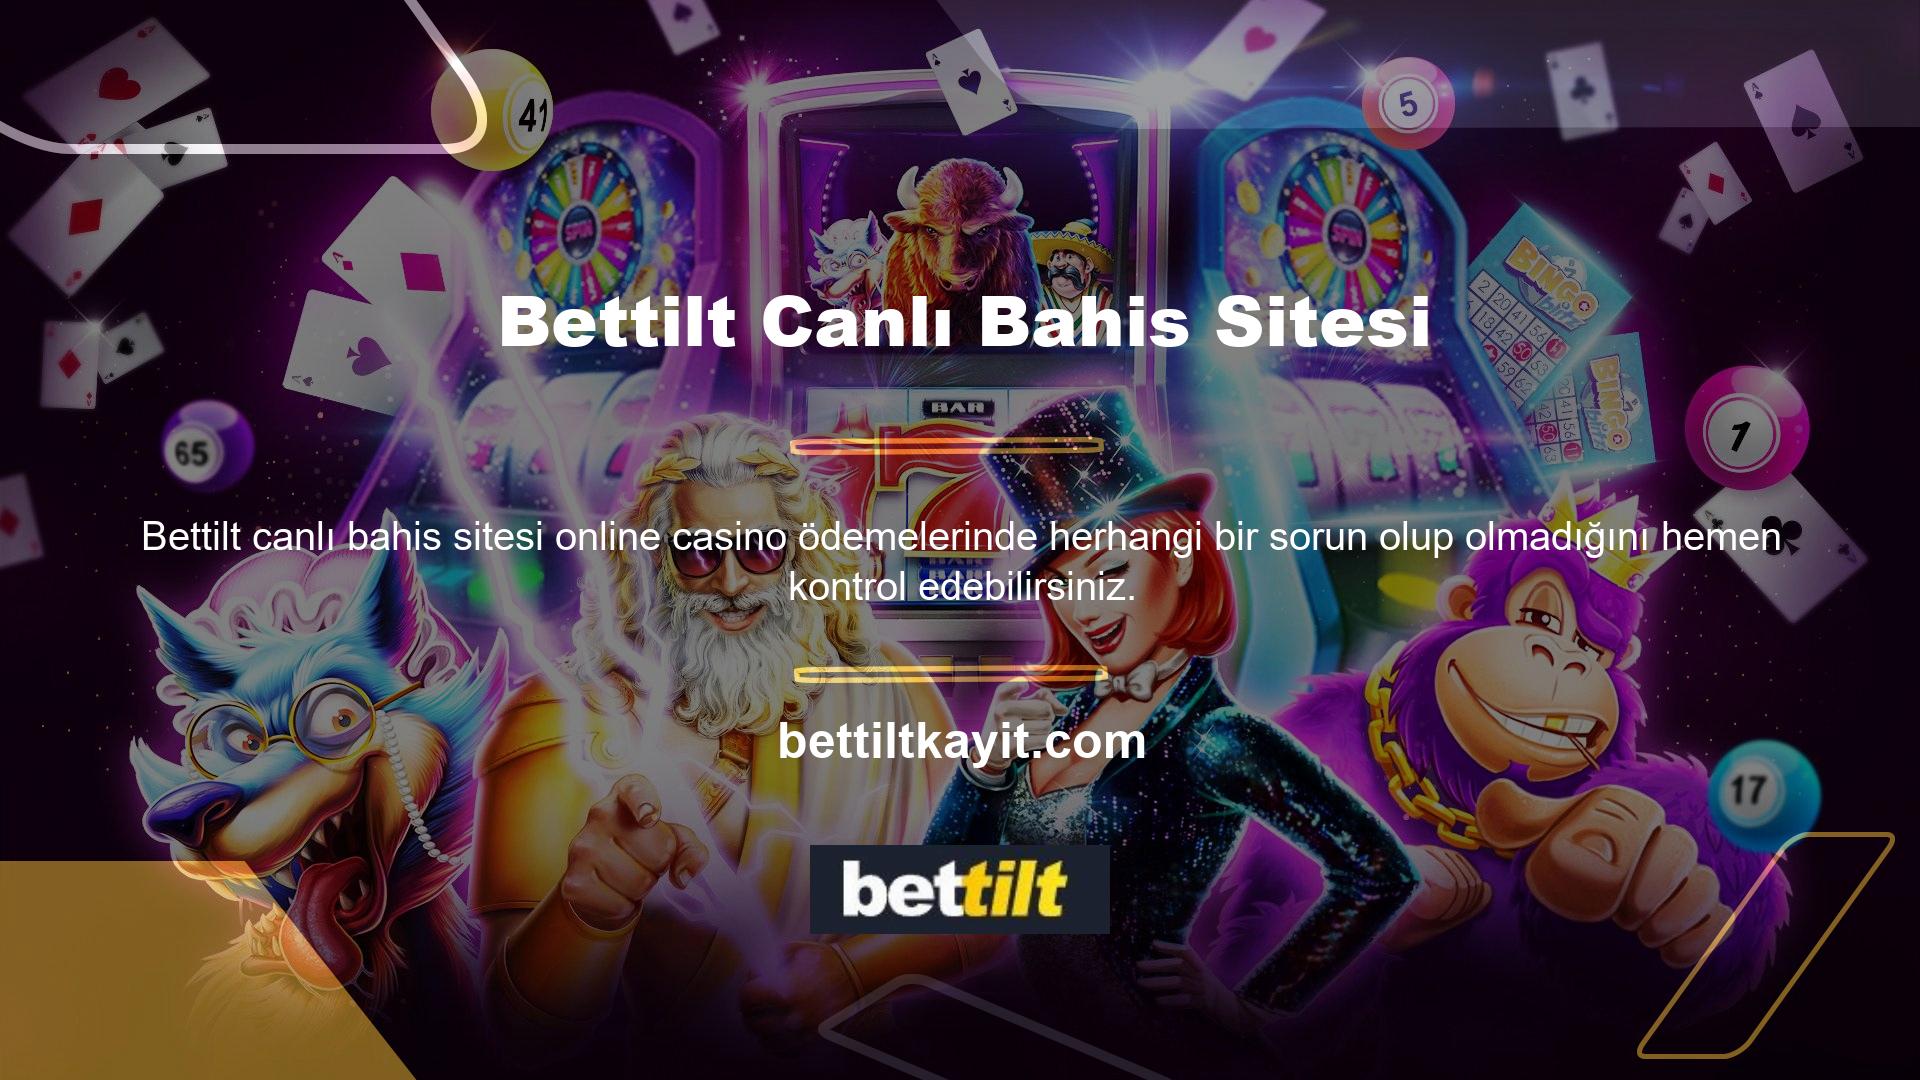 Yeni Bettilt online casino sitesine üye olduğunuzda, bonus alan ve aynı zamanda kar elde eden ilk kişi siz olacaksınız